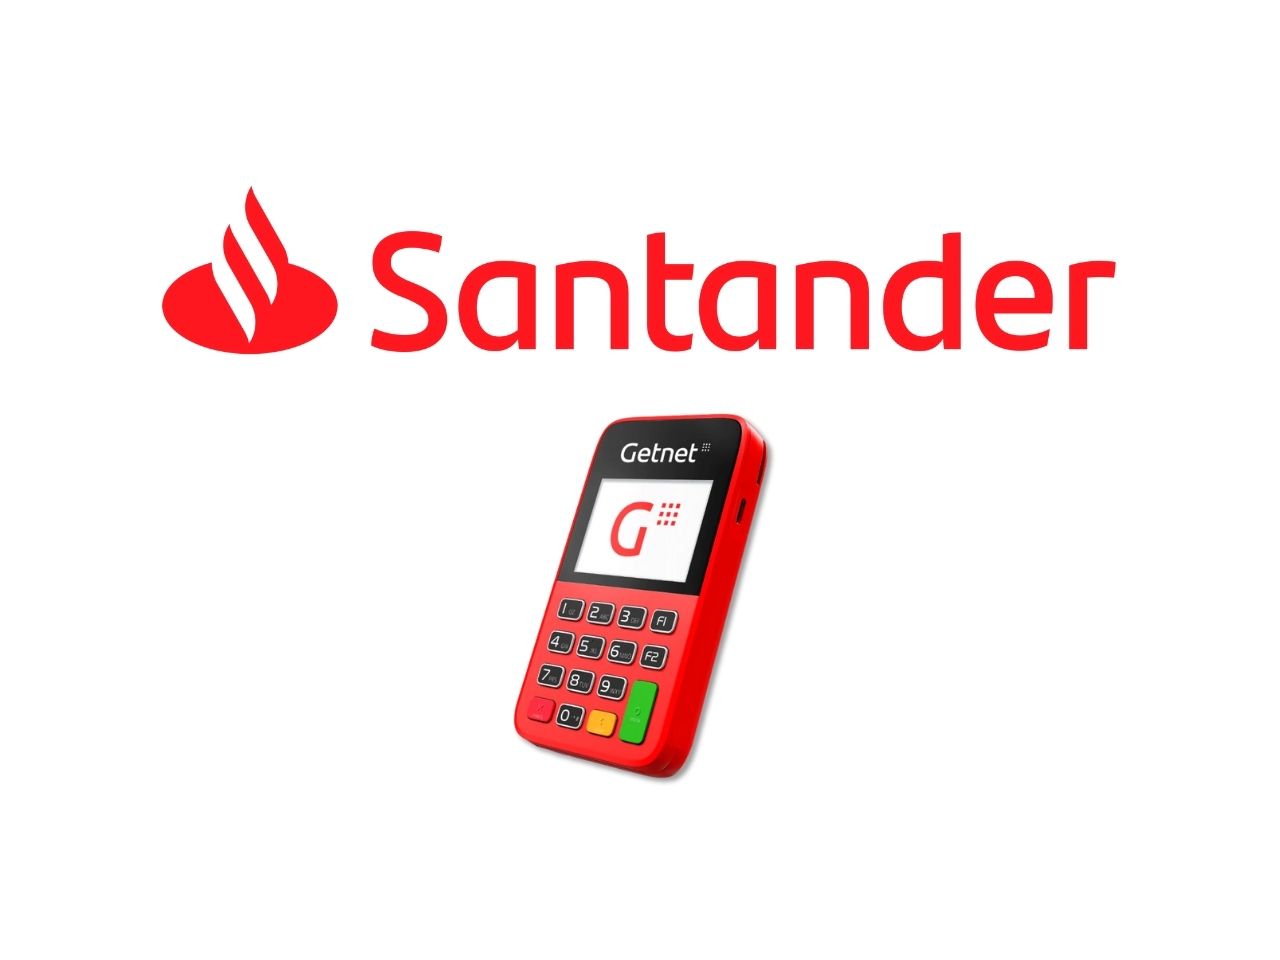 Maquininha de cartão Santander é boa? Veja modelos e preços da Getnet